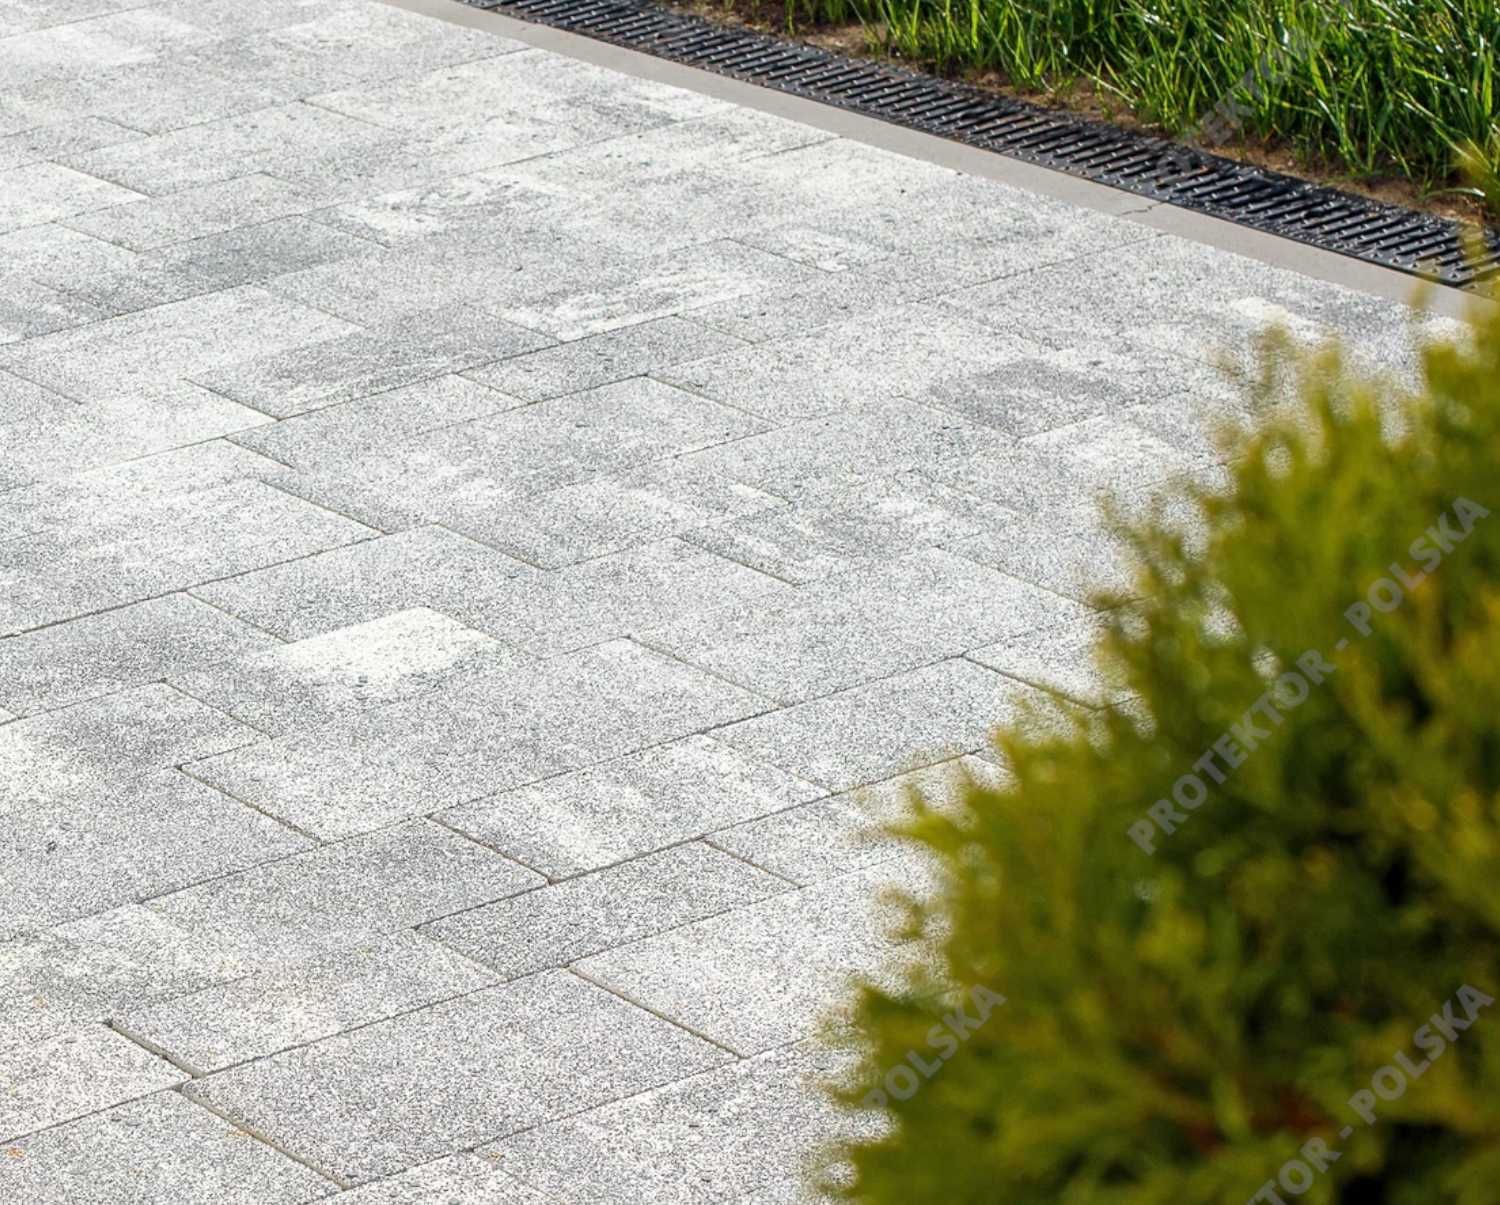 kostka brukowa IDEO Bruk betonowa chodnik wjazd plac płyta taras ogród